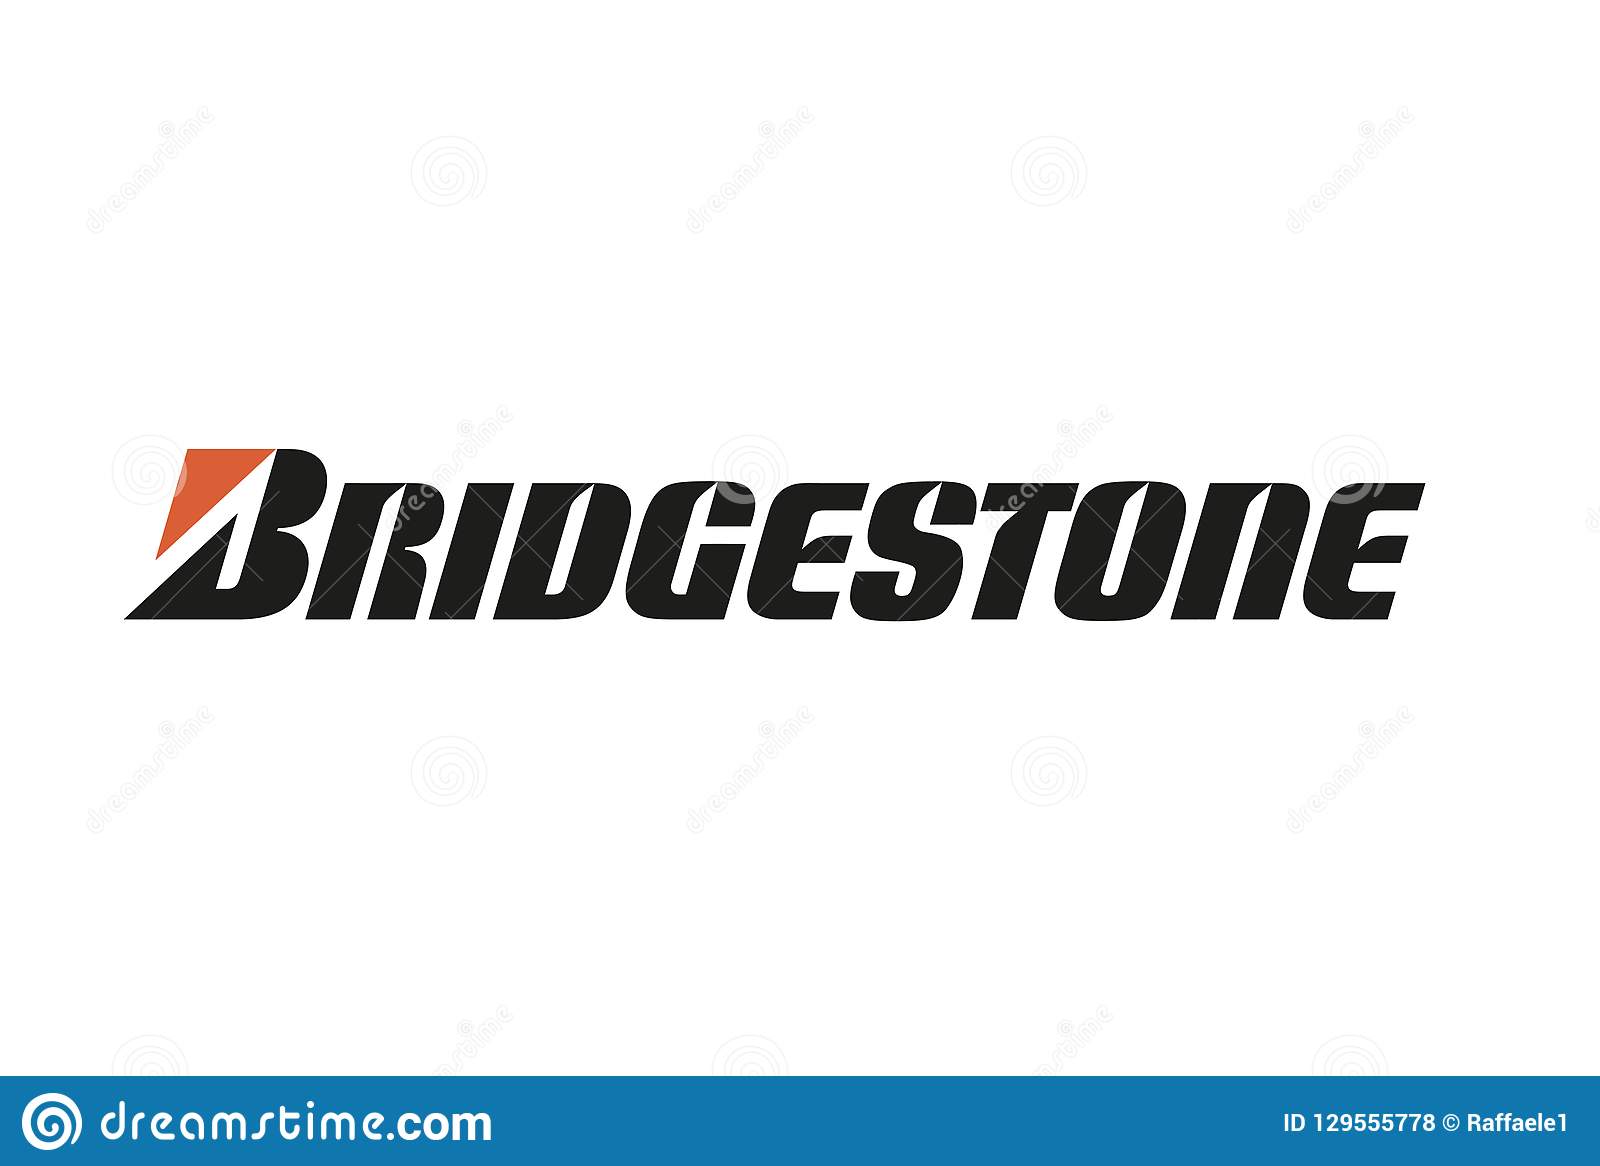 Bridgestone yangilangan logotipini taqdim etdi